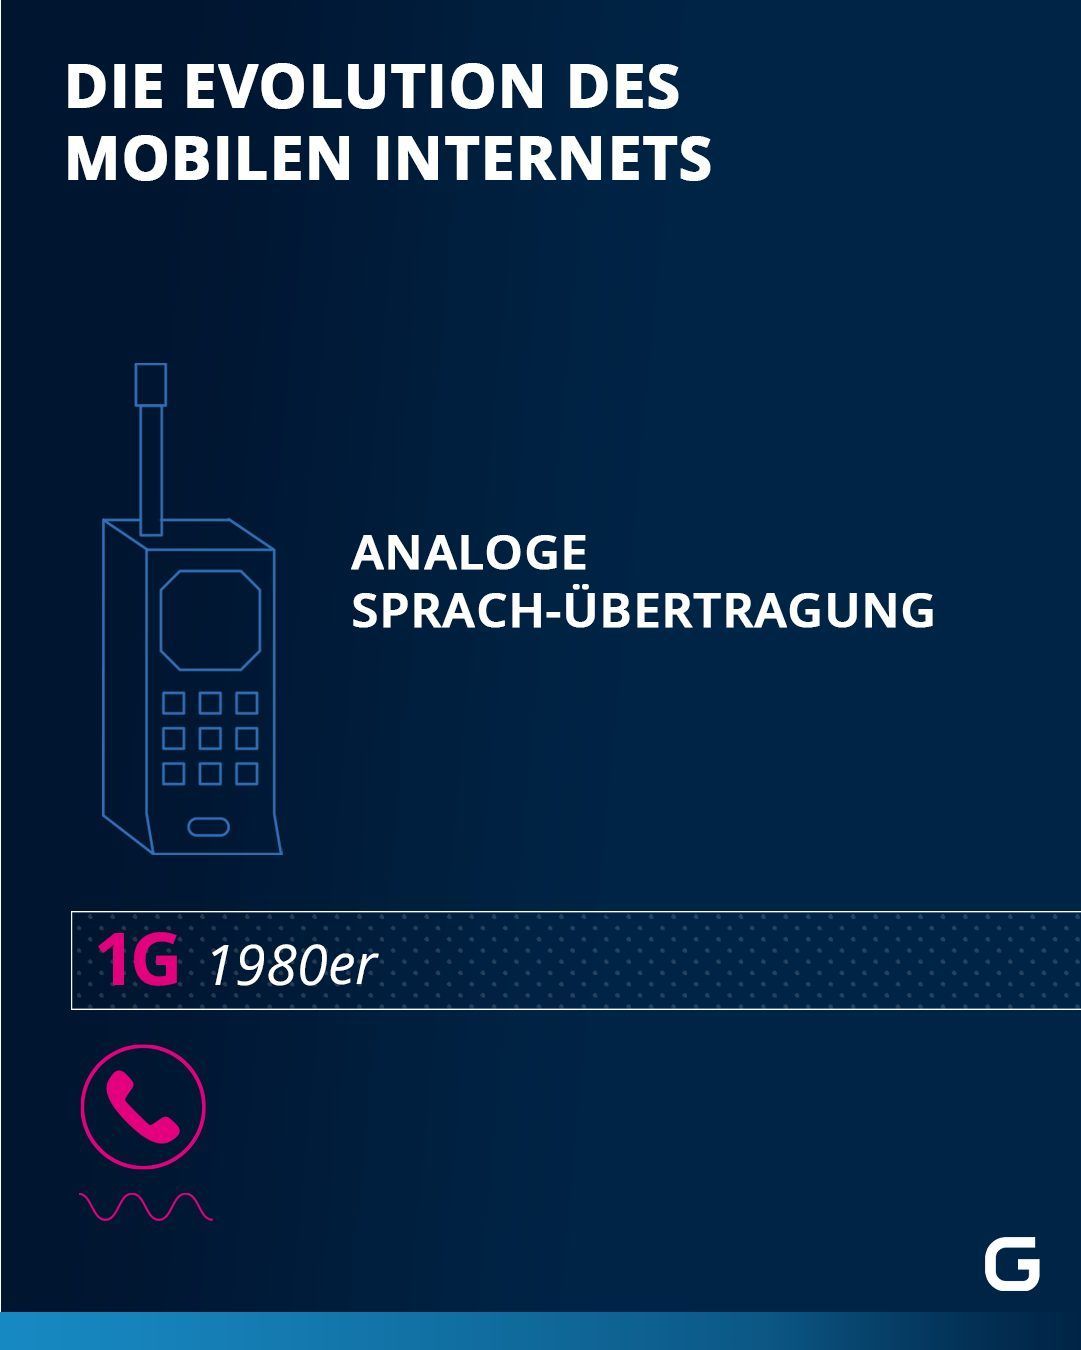 Evolution des Mobilen Internets: 1G